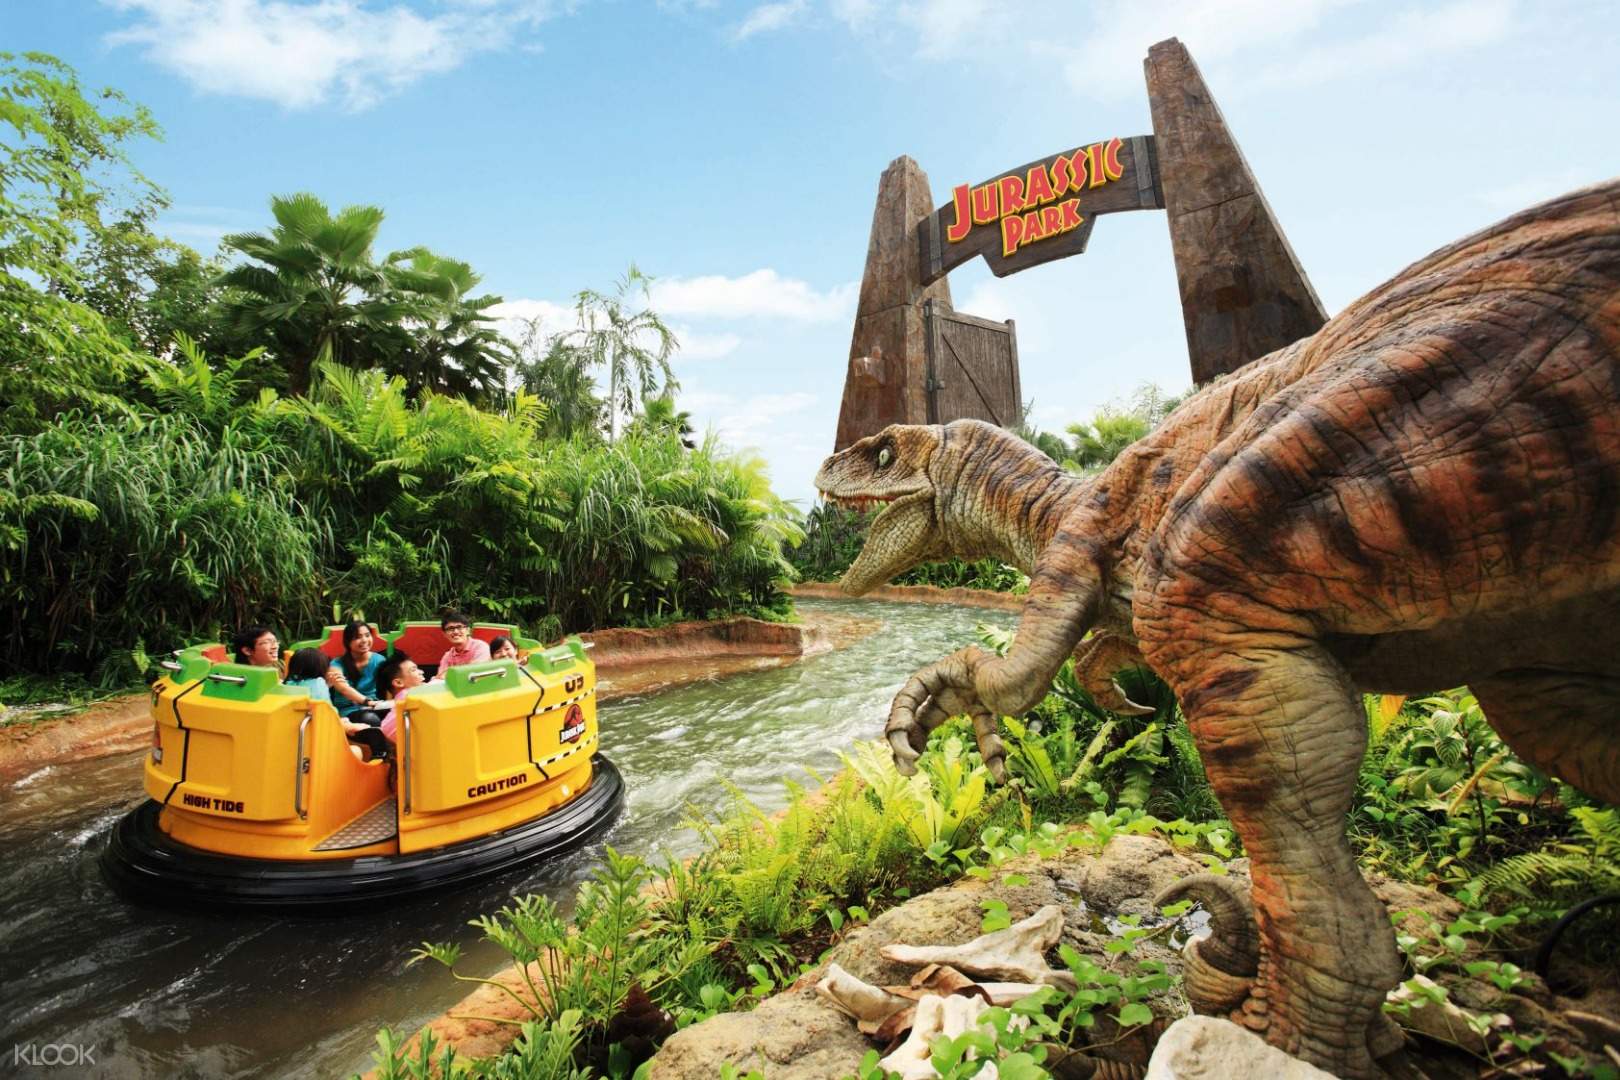 Jurassic Park Rapid Adventure (klook)